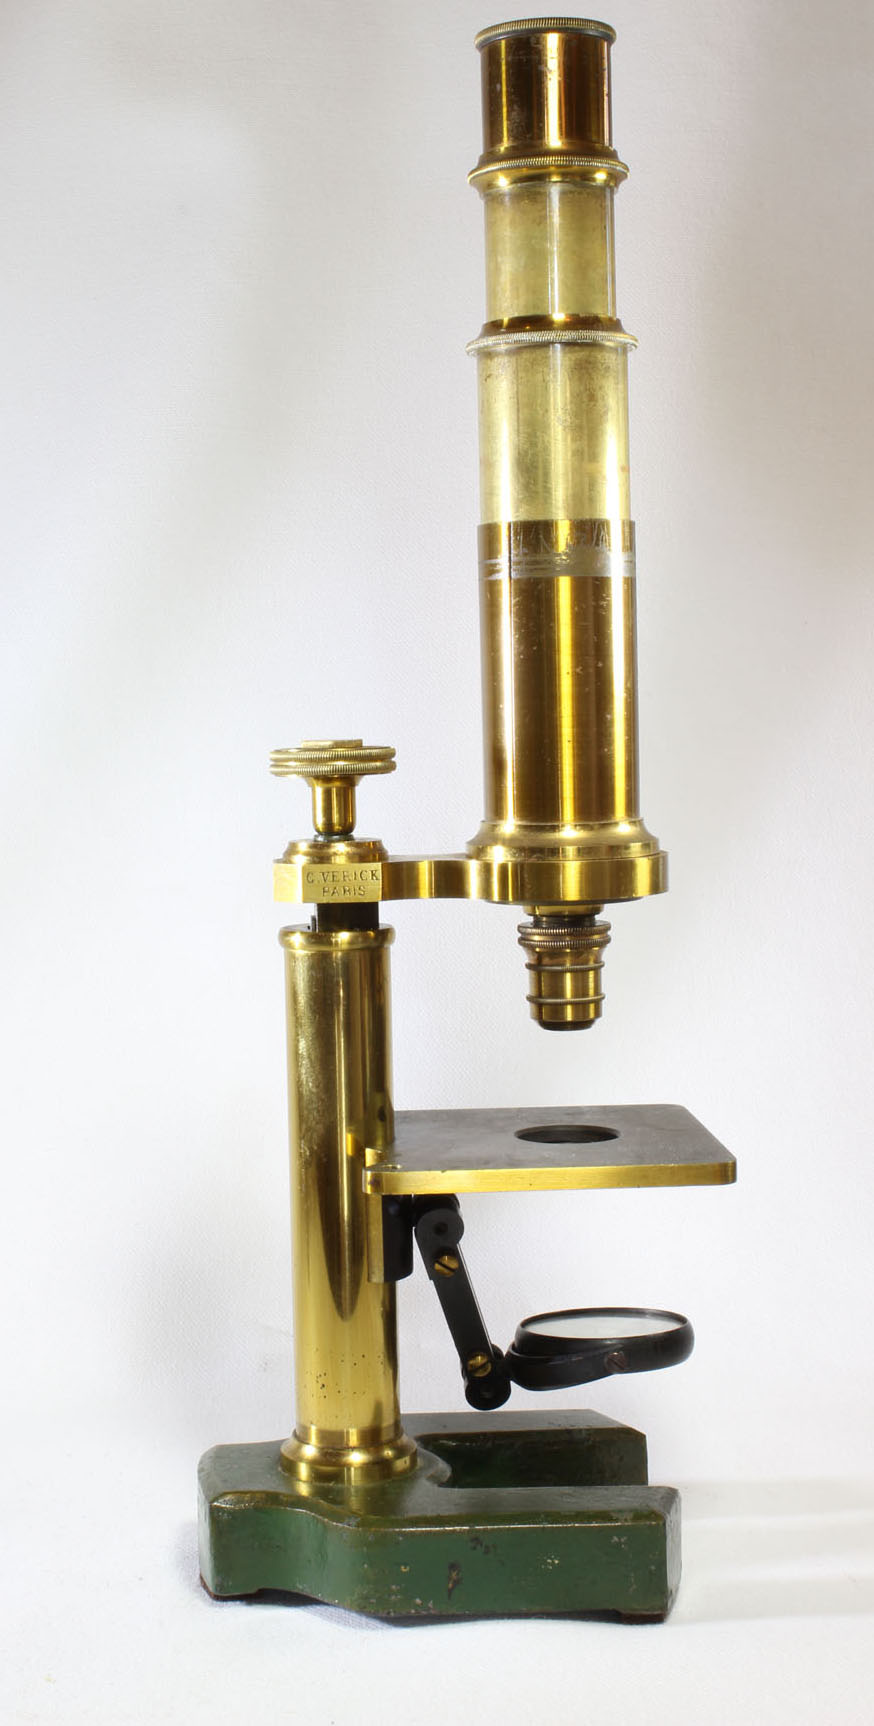 Verick Model 7 microscope